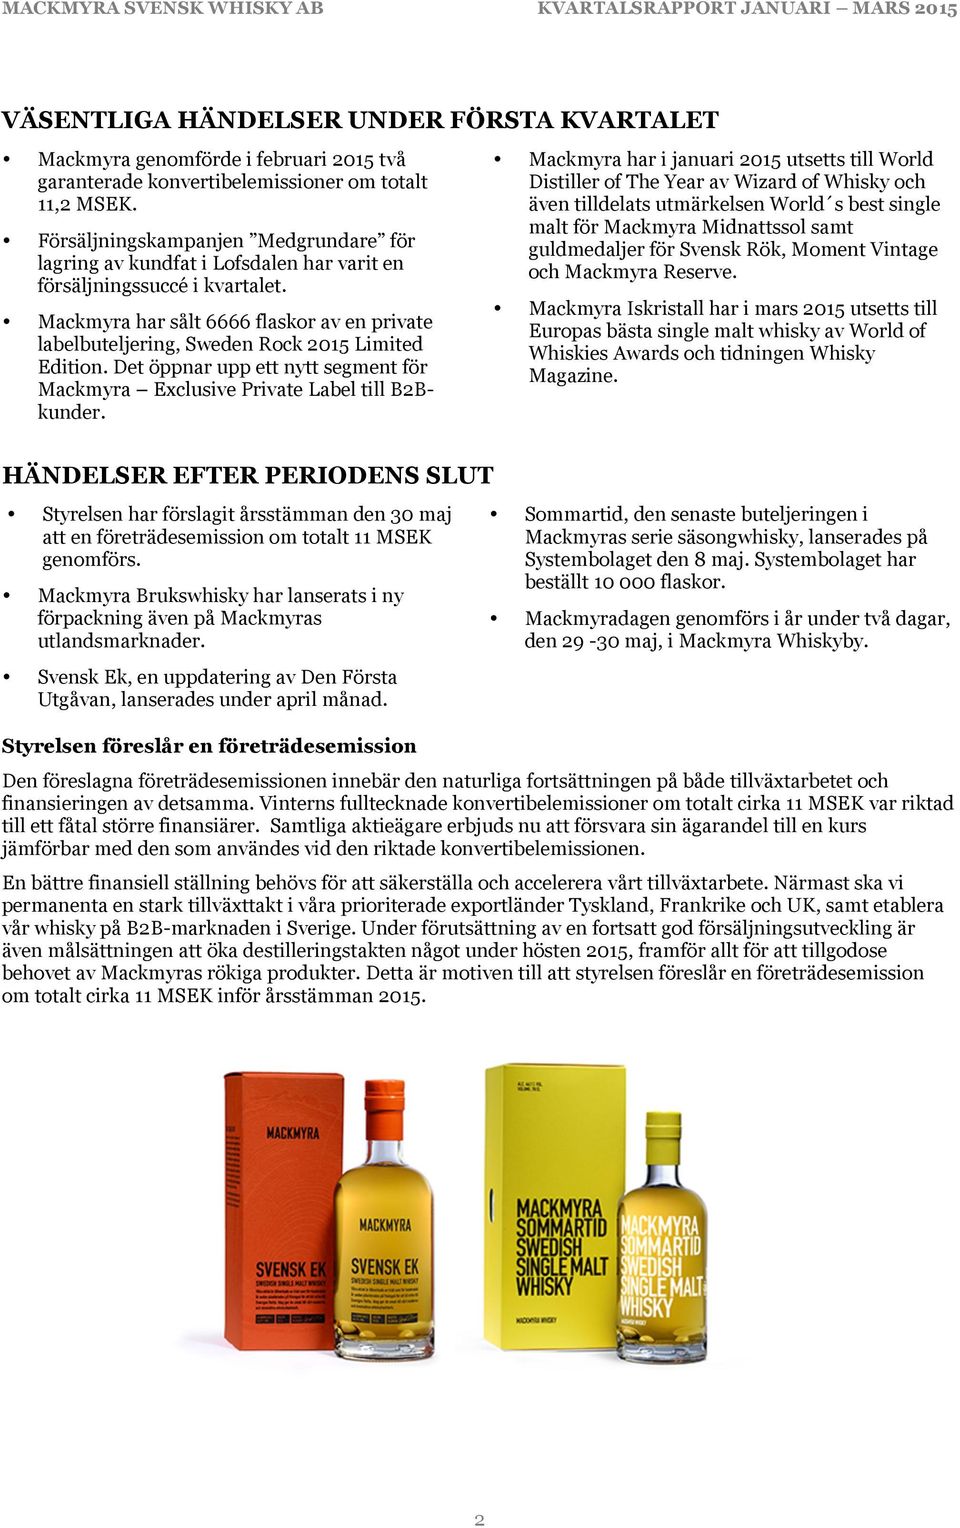 Mackmyra har sålt 6666 flaskor av en private labelbuteljering, Sweden Rock 2015 Limited Edition. Det öppnar upp ett nytt segment för Mackmyra Exclusive Private Label till B2Bkunder.